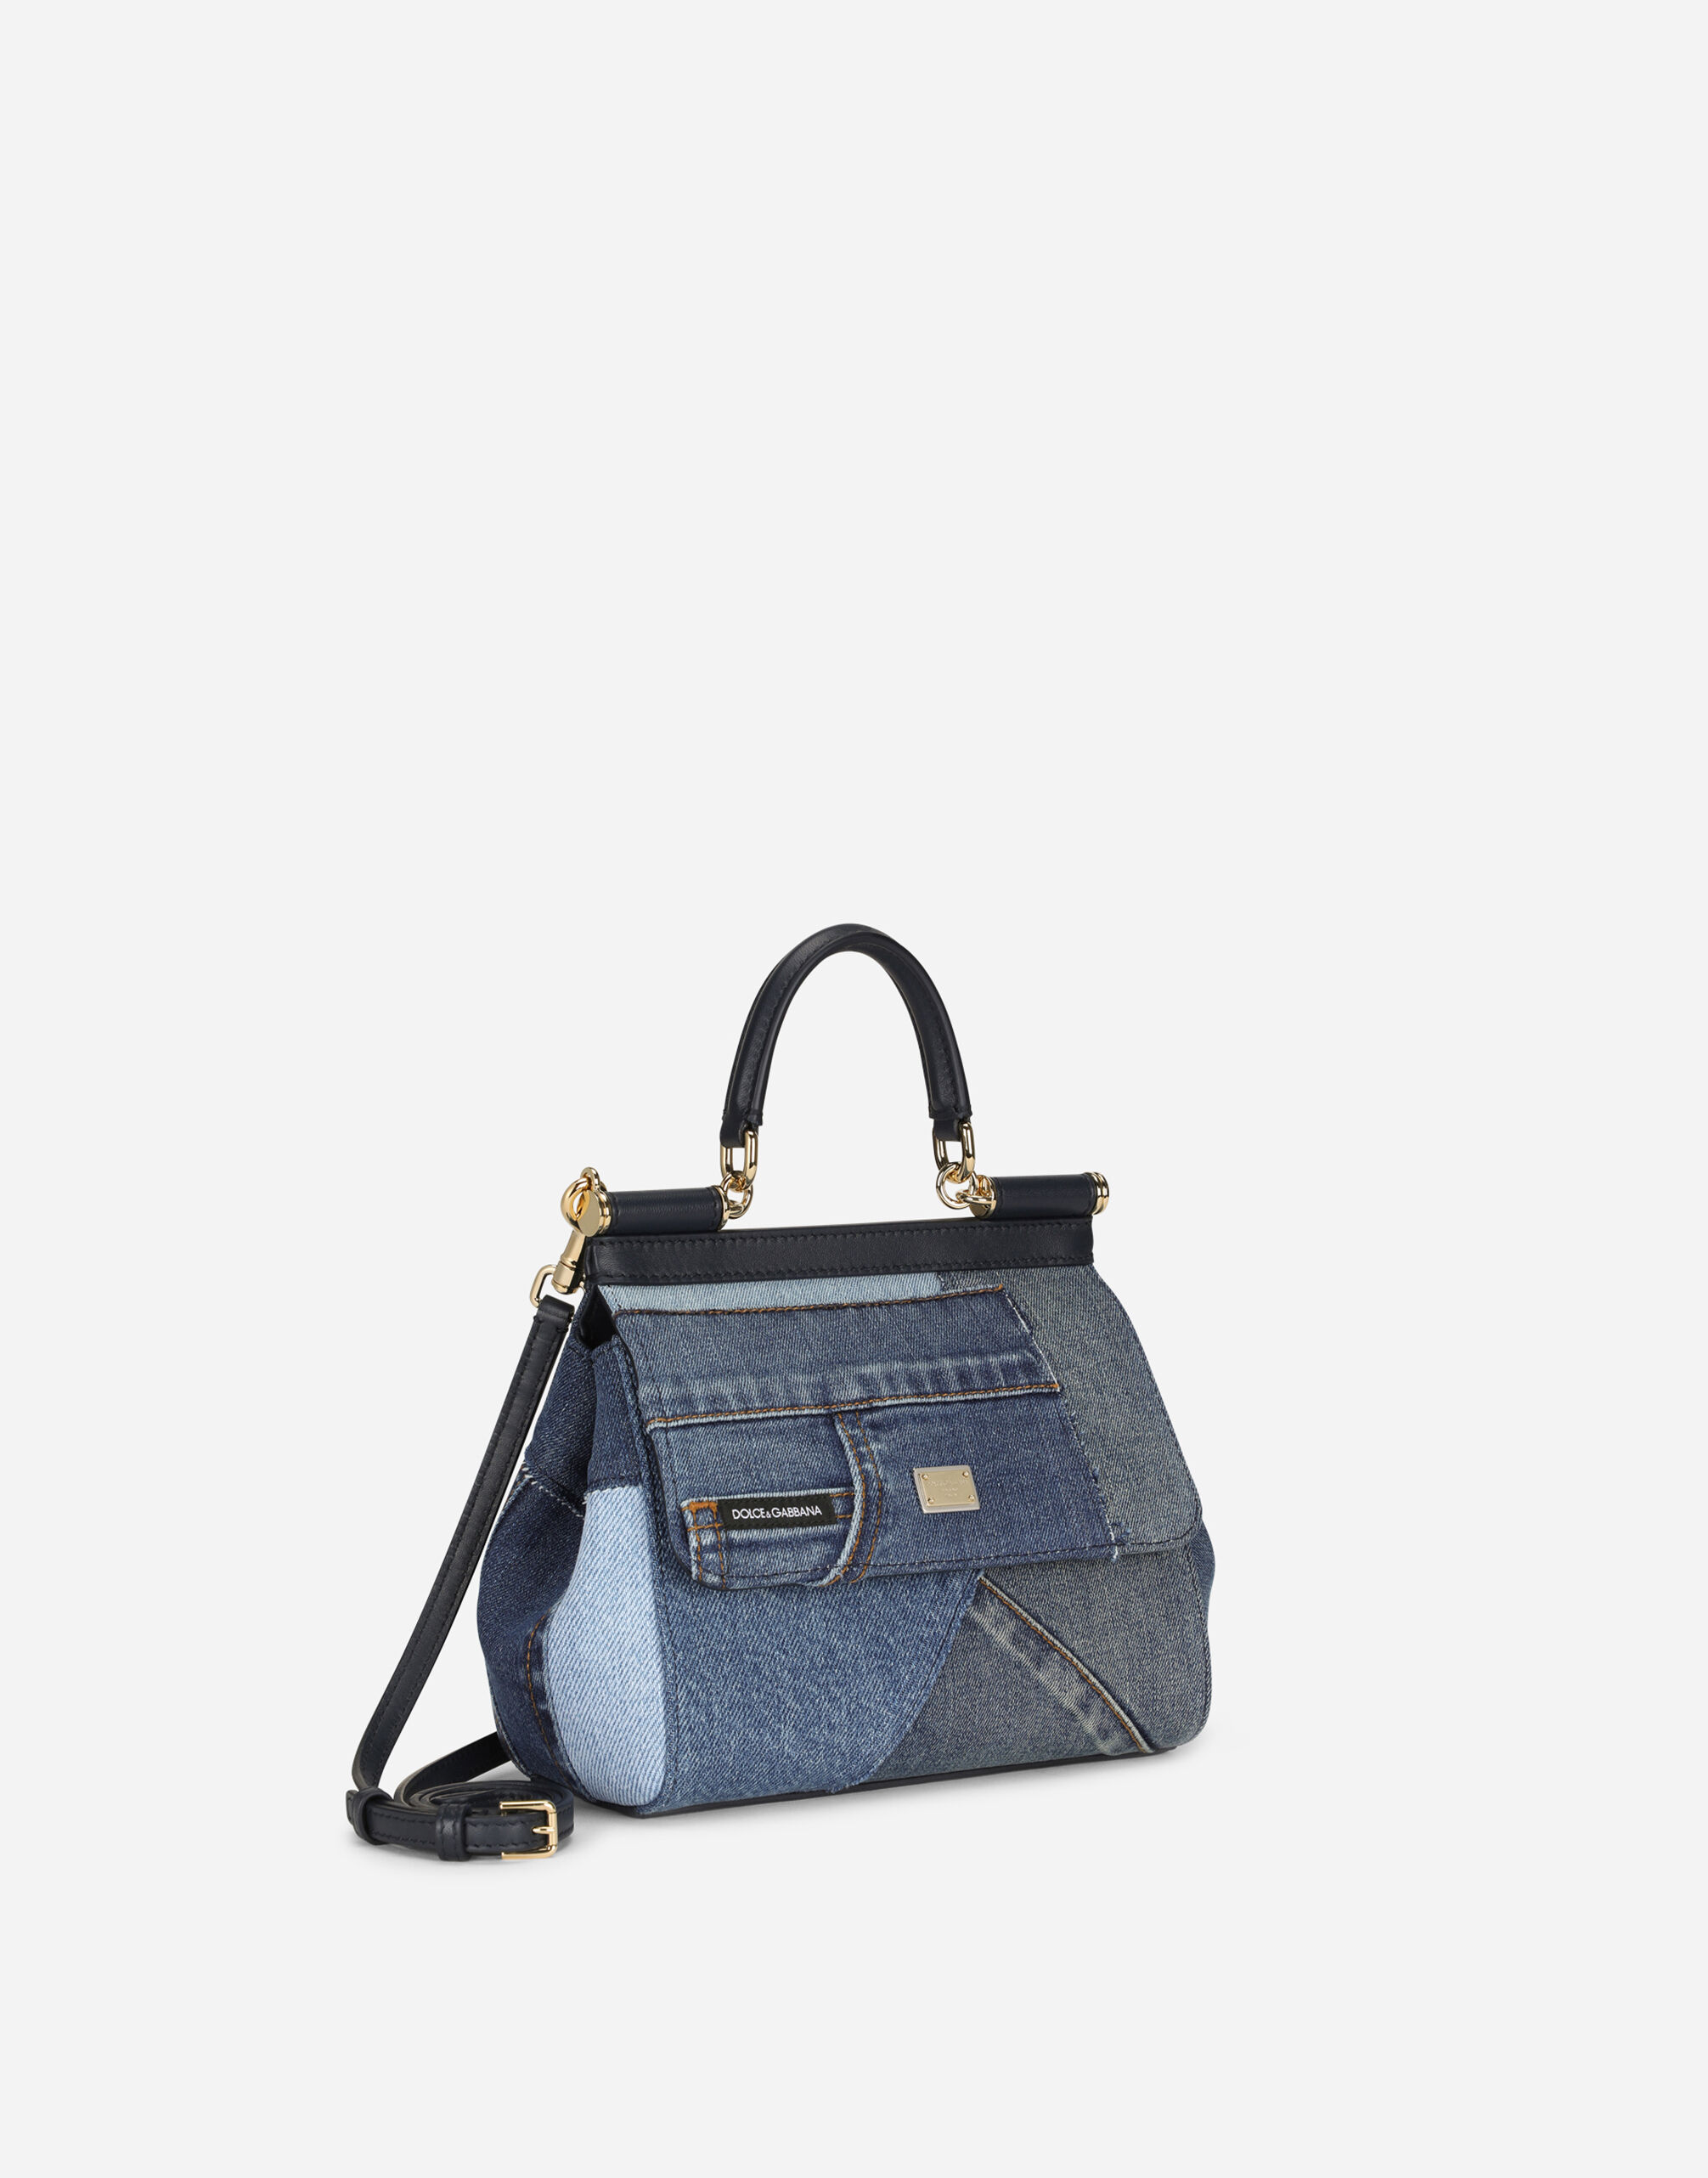 small Sicily Soft patchwork-denim top-handle bag | Dolce & Gabbana |  Eraldo.com